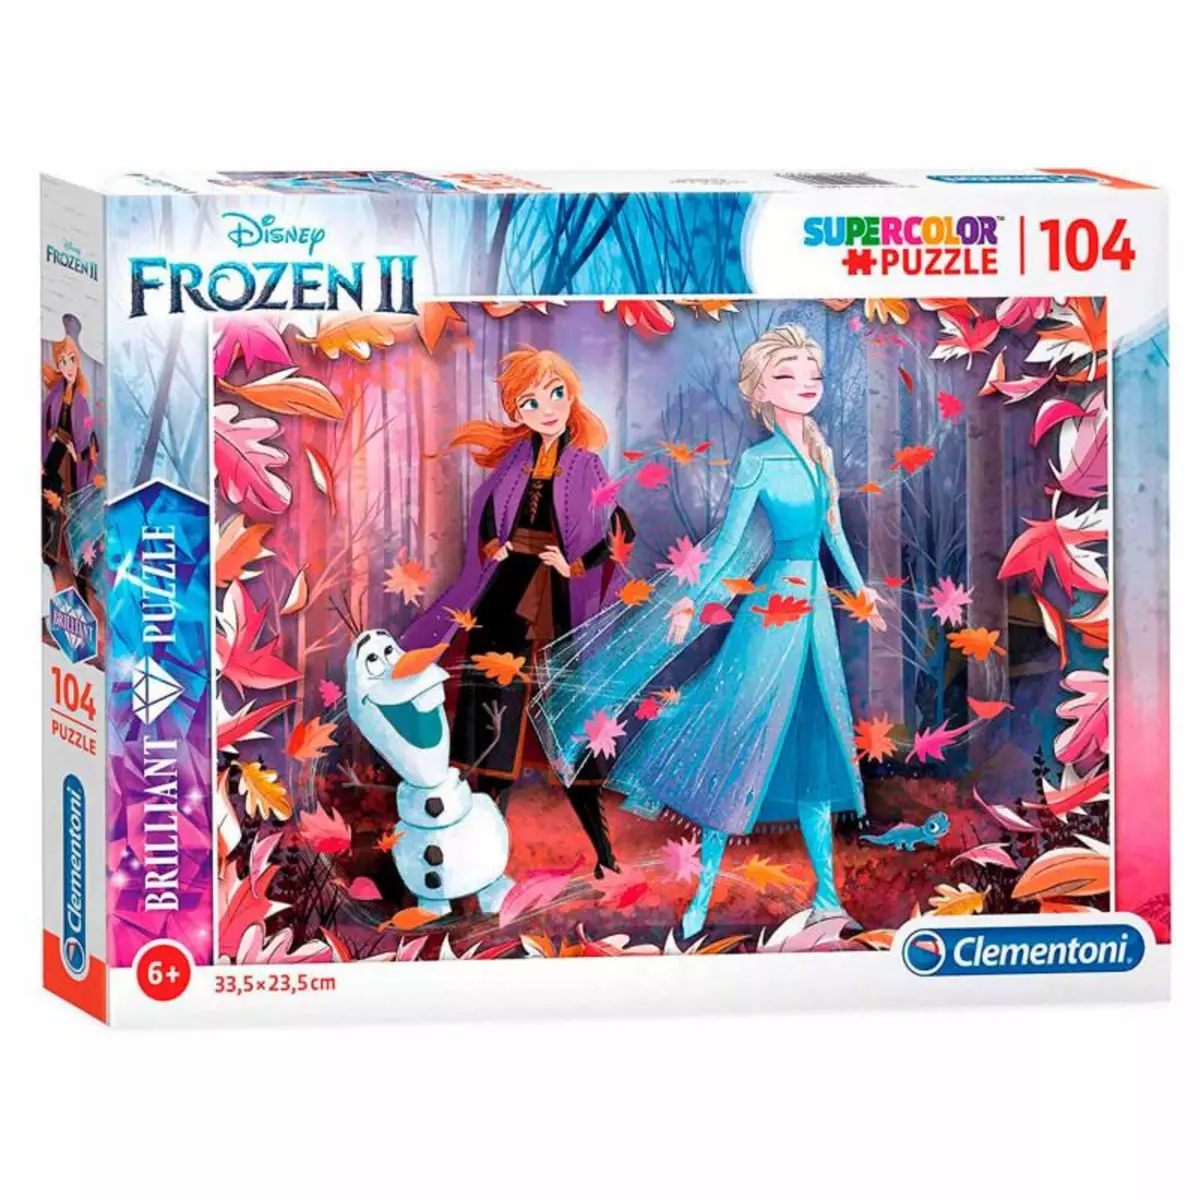 CLEMENTONI Clementoni Brilliant Puzzle Disney Frozen 2, 104st.